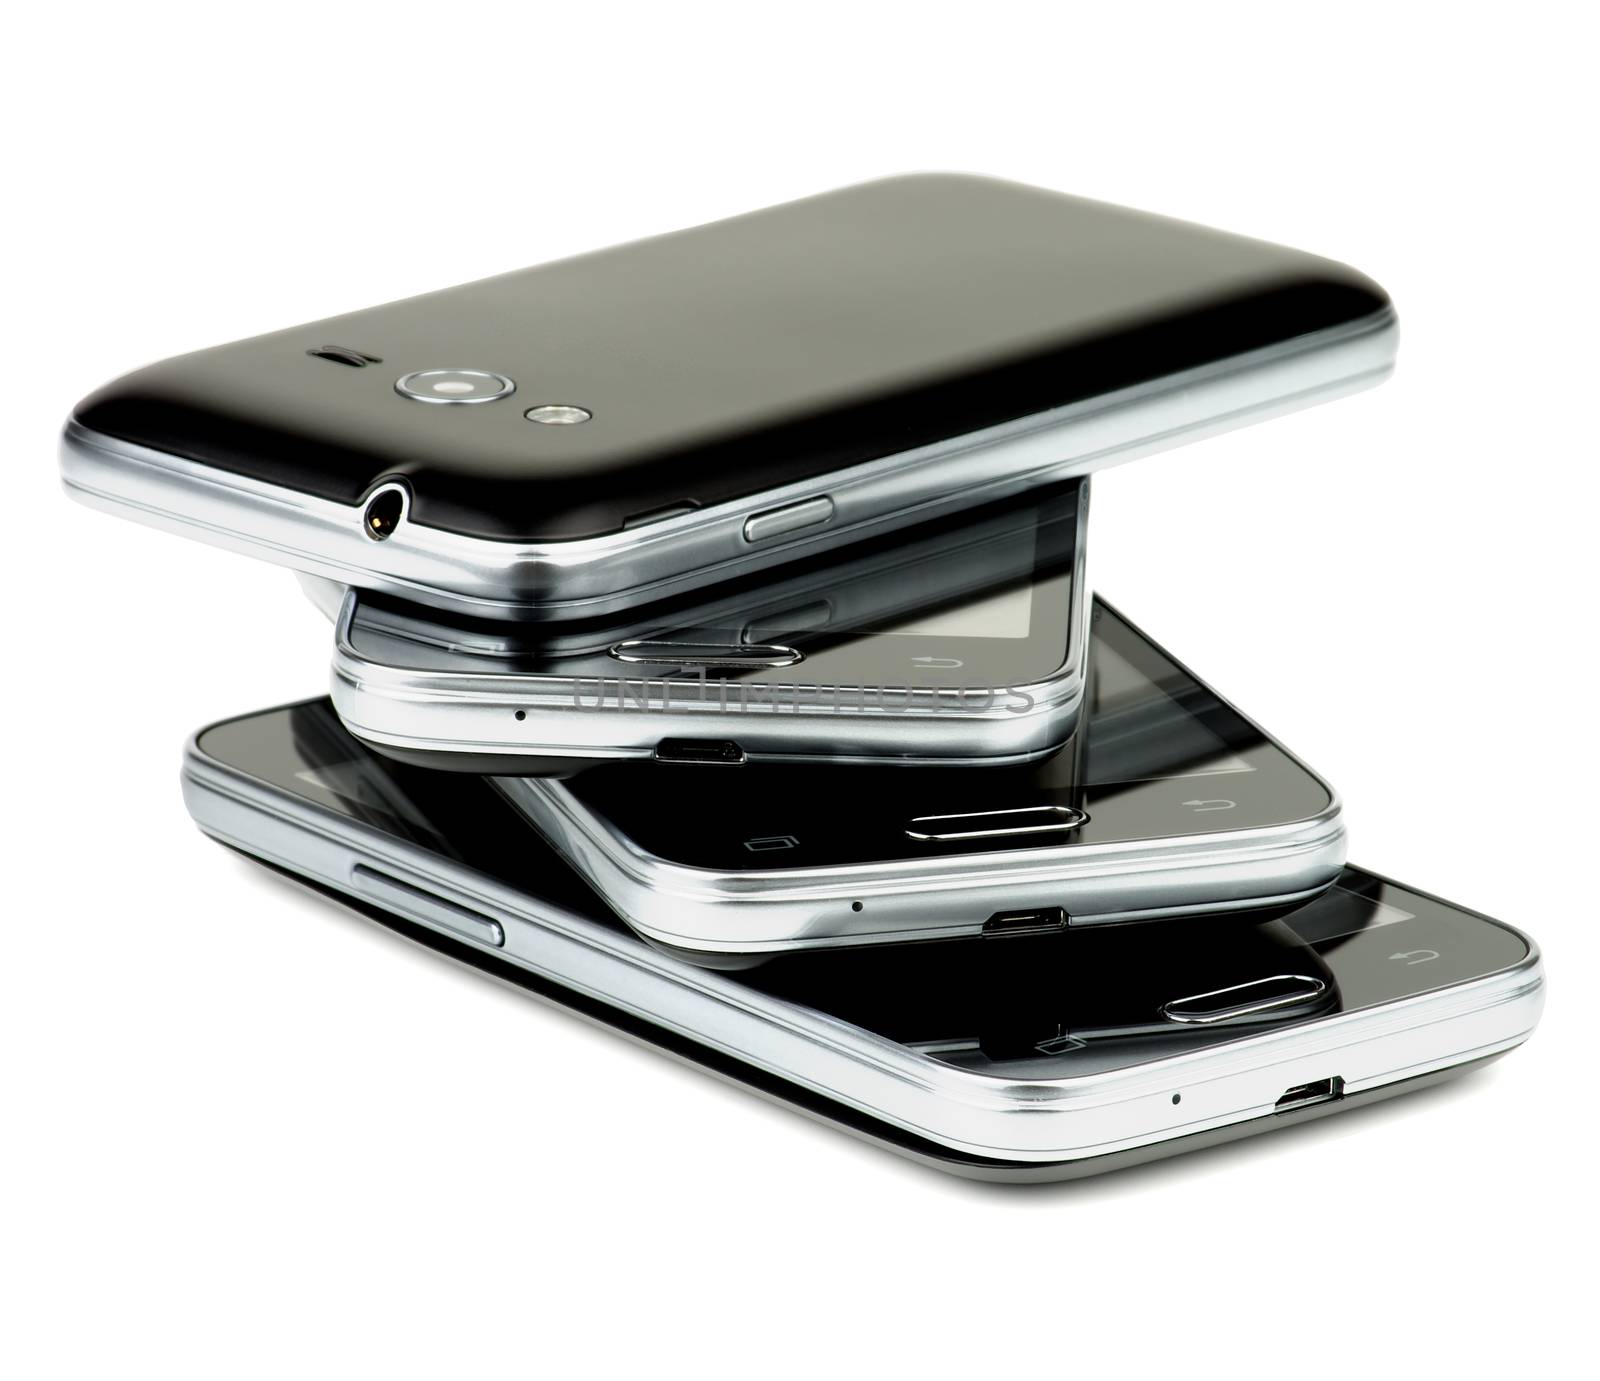 Stack of Smartphones by zhekos